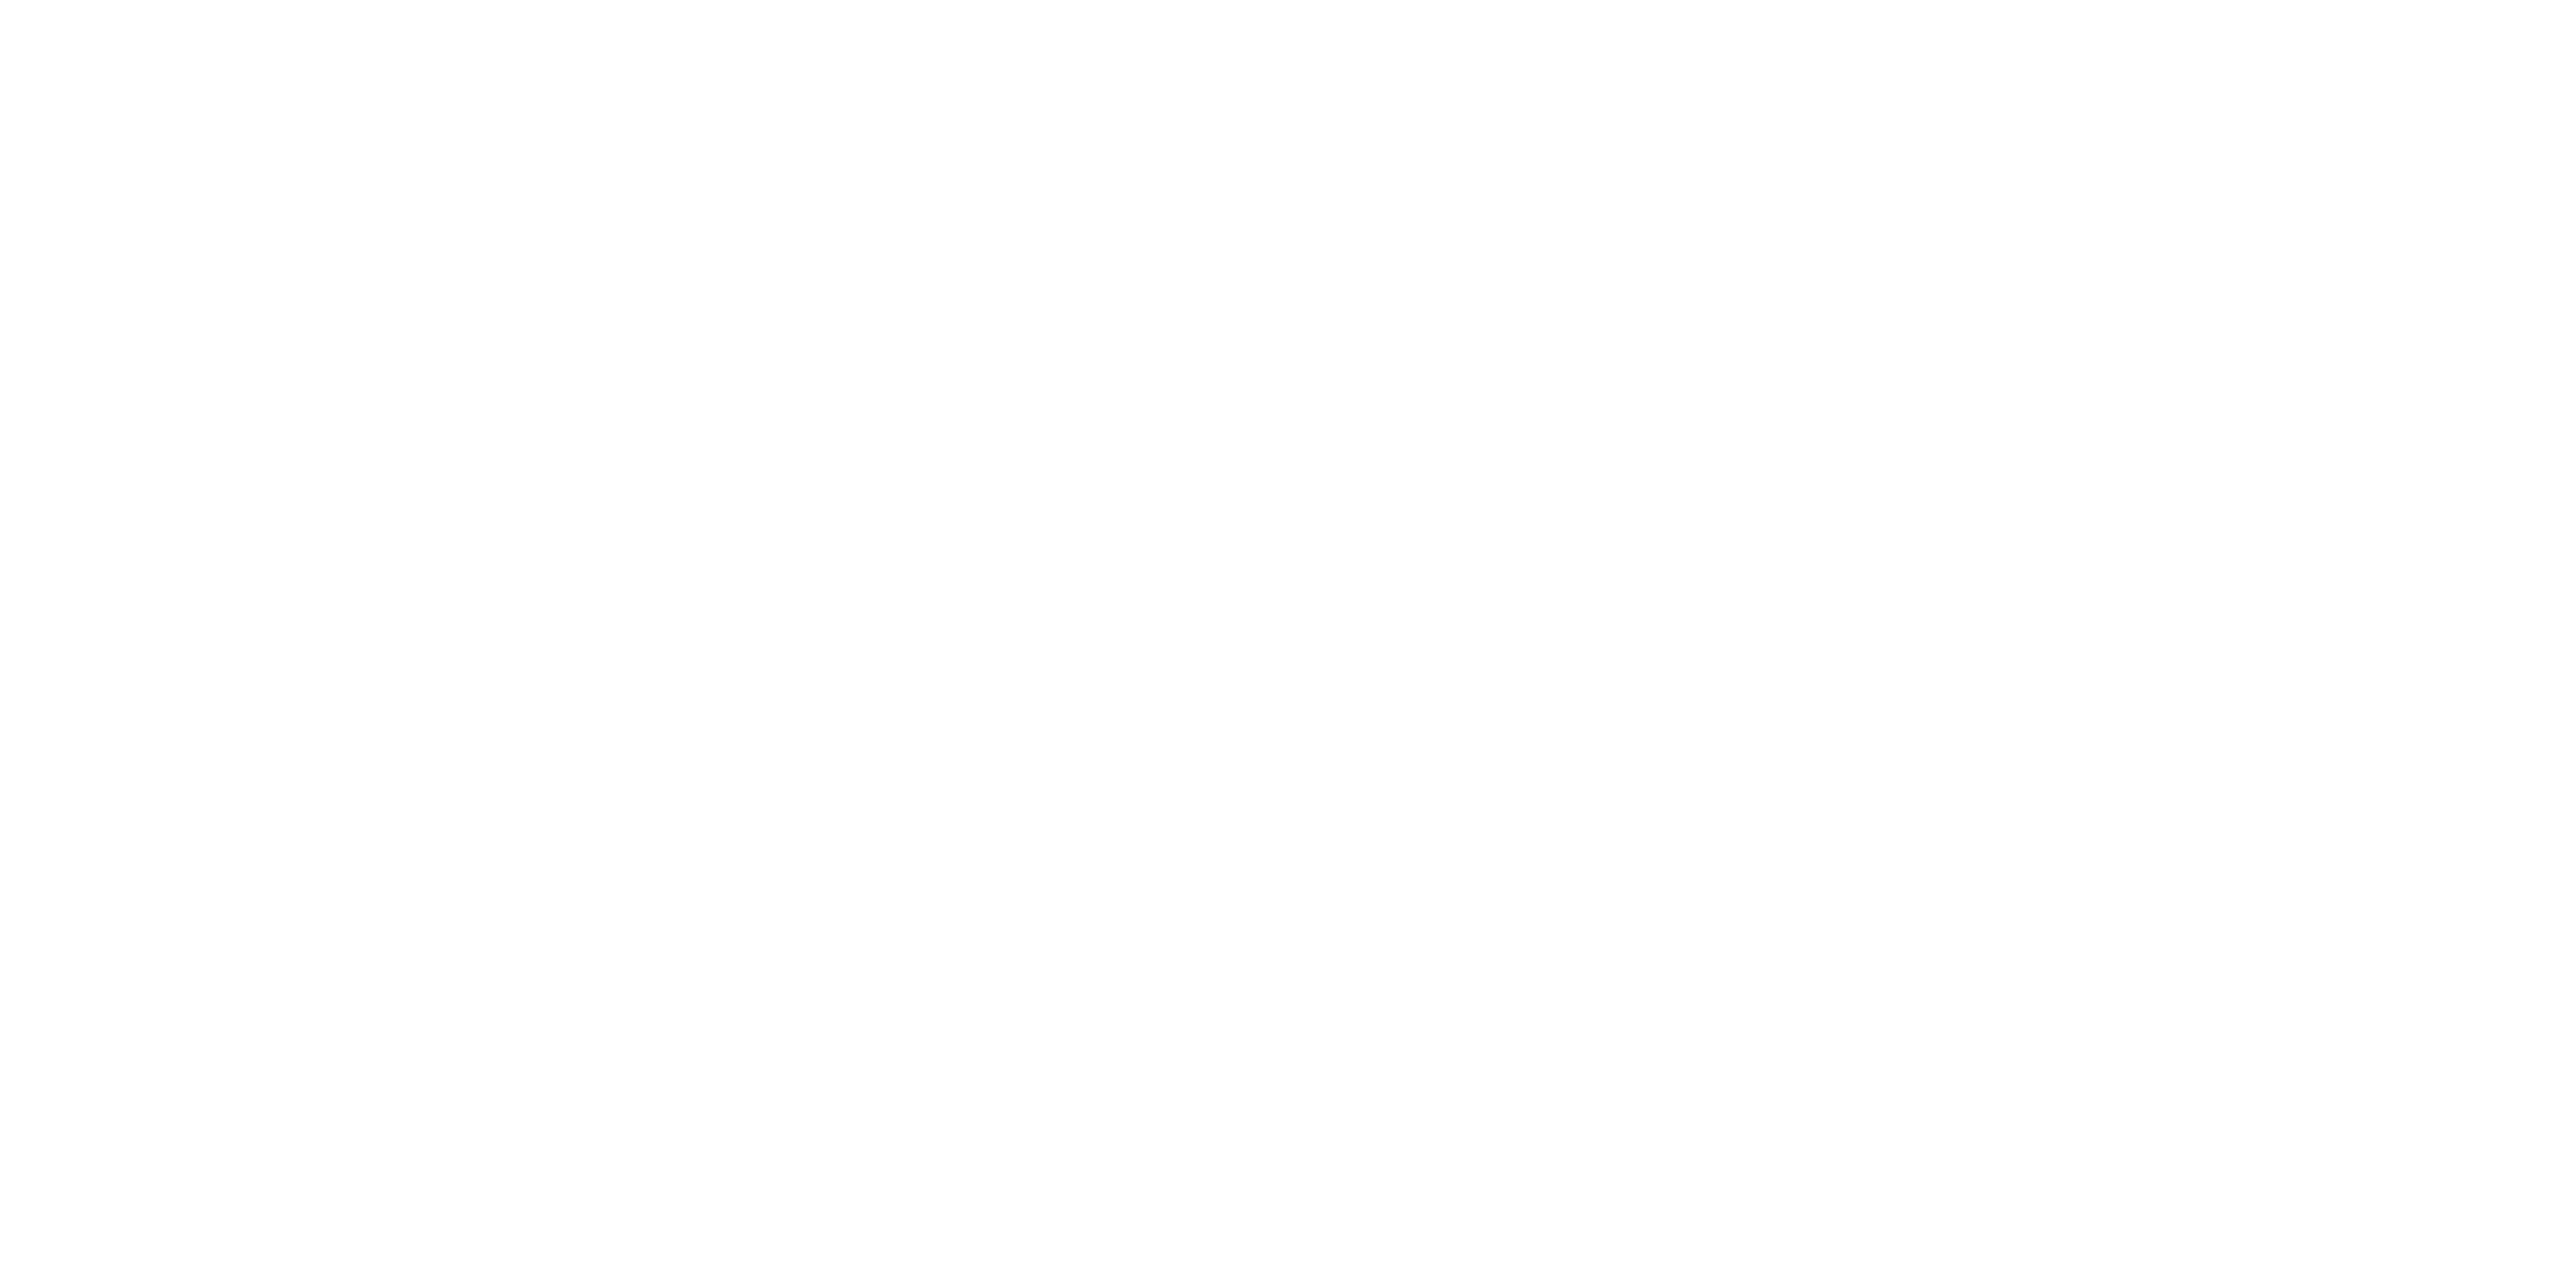 KARV logo in white